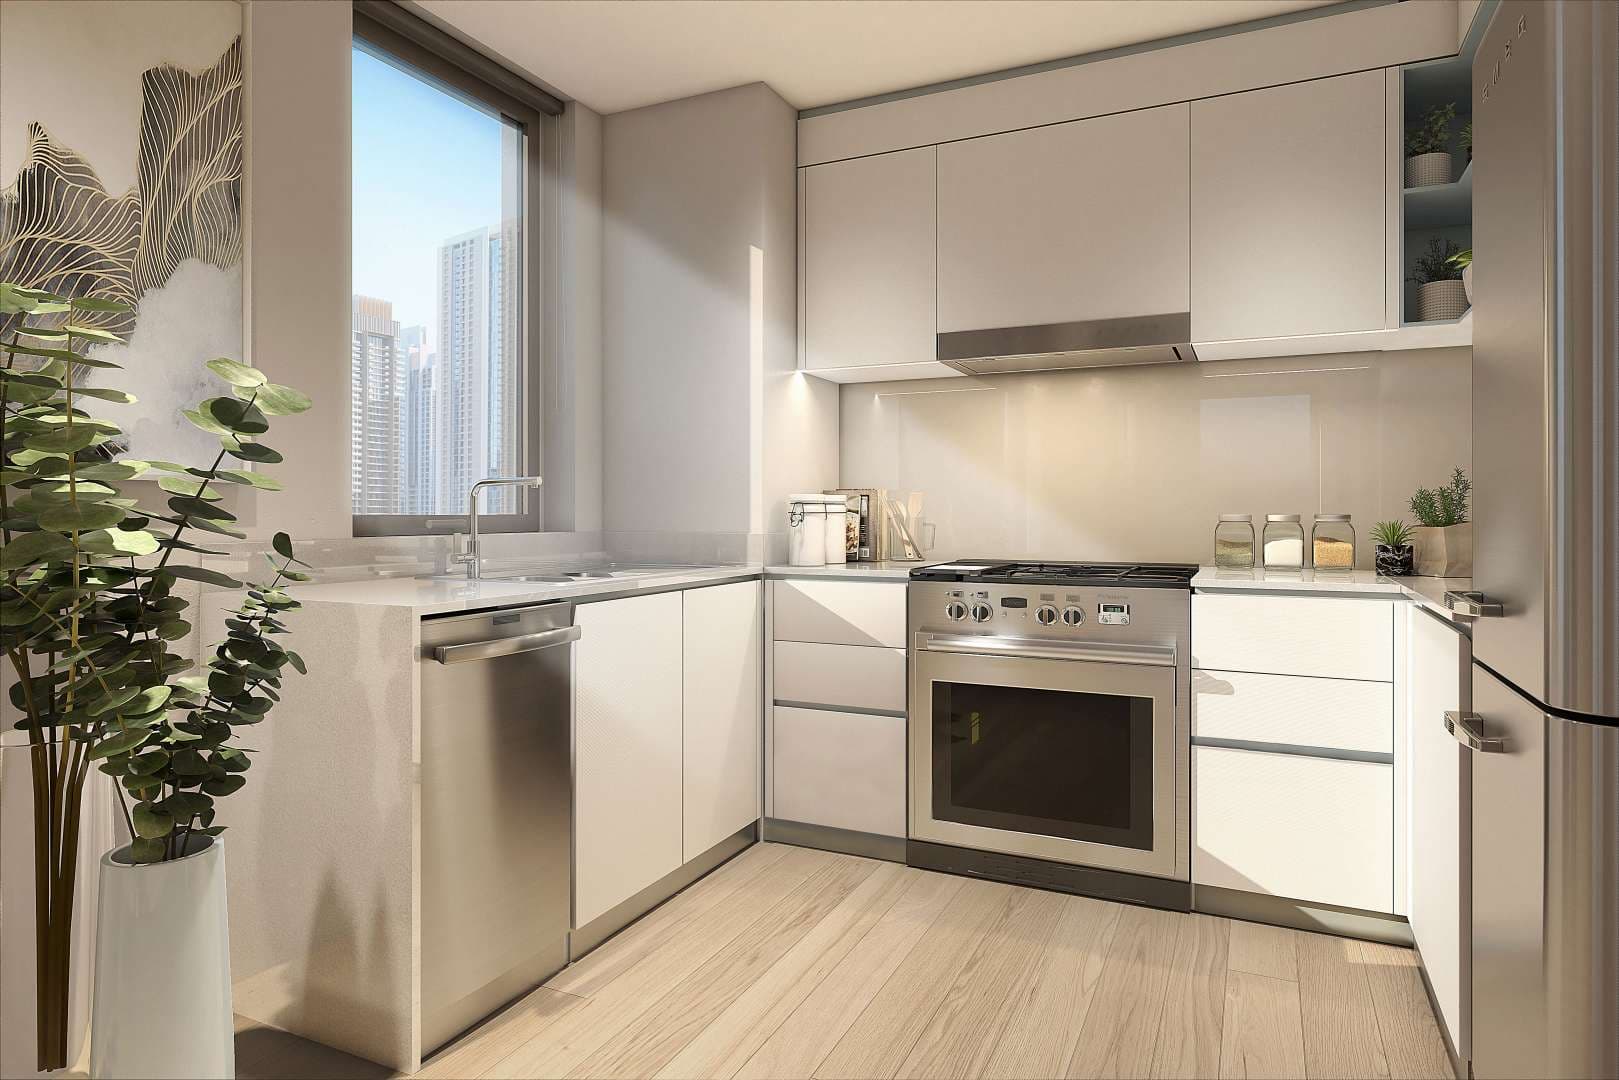 1 Bedroom Apartment For Sale Breeze At Dubai Creek Harbour Lp06430 1544bd73192a2700.jpg